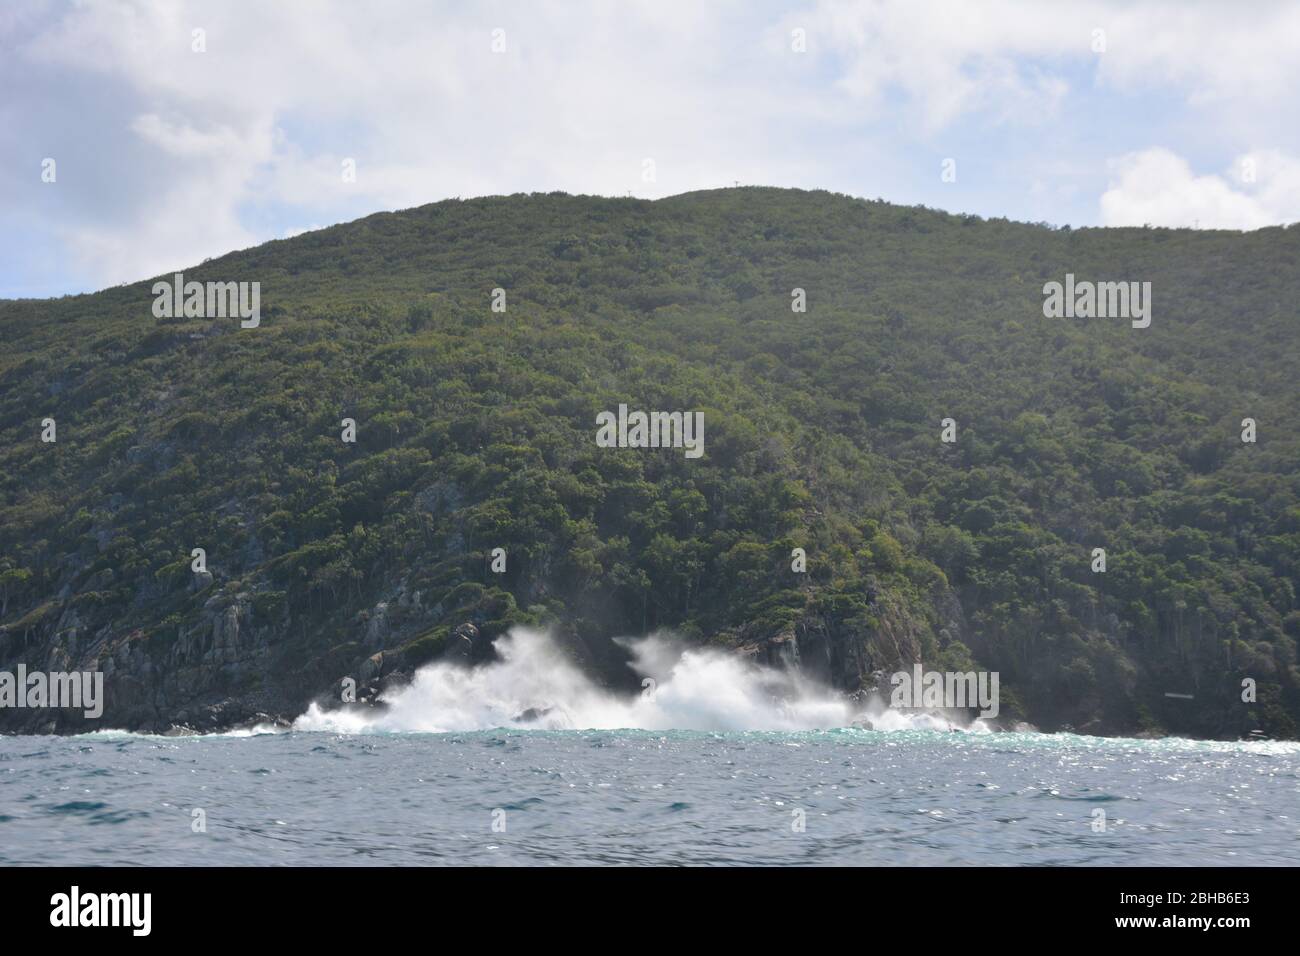 Le onde si schiantano contro un'isola boscosa nelle Isole Vergini Britanniche, un territorio britannico d'oltremare nei Caraibi. Foto Stock